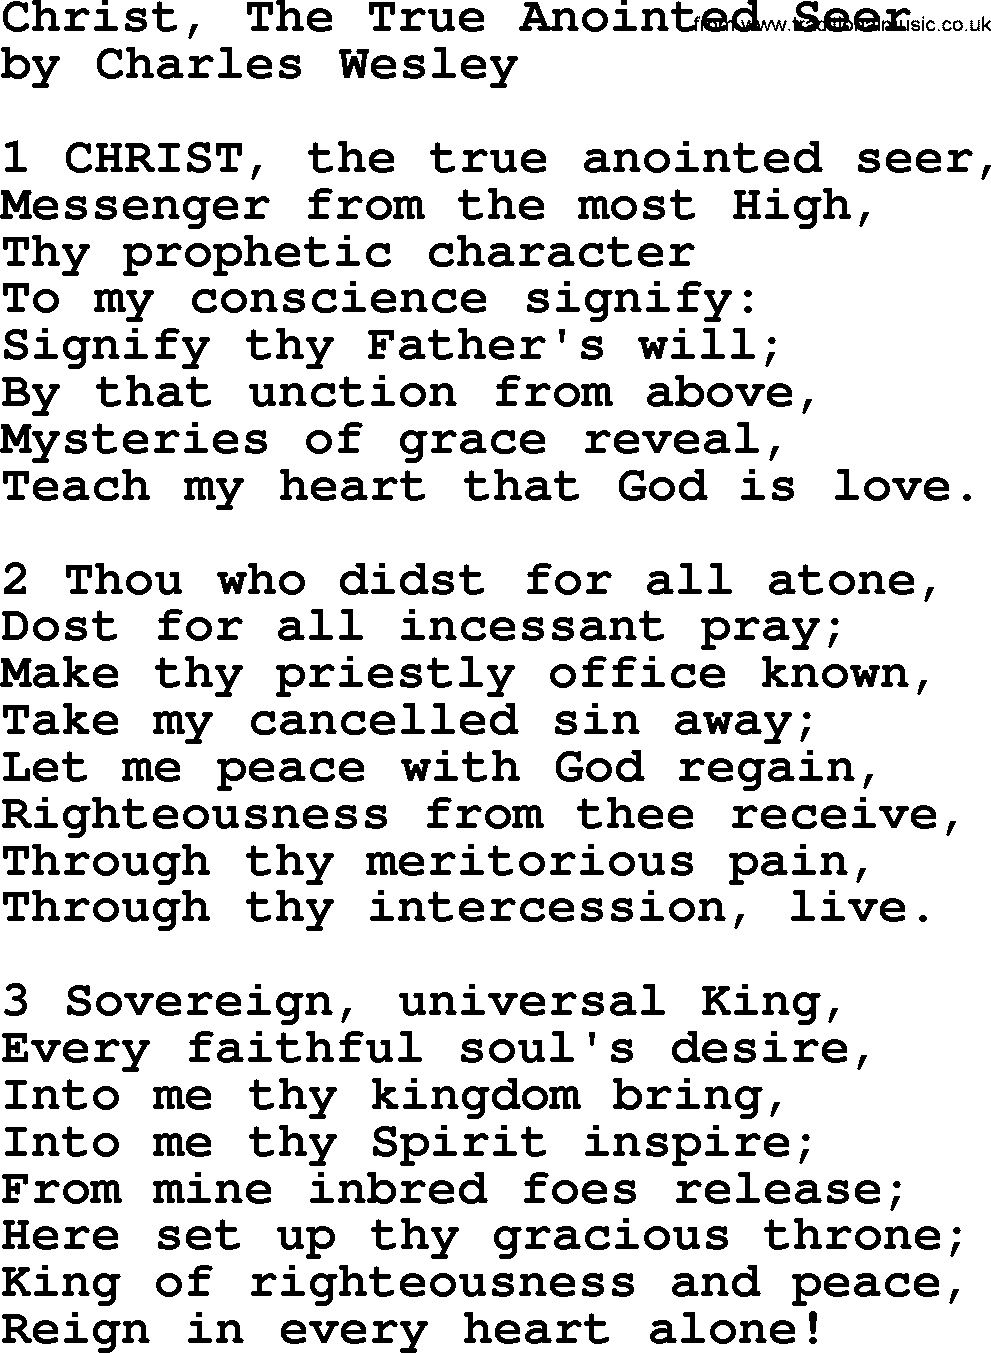 Charles Wesley hymn: Christ, The True Anointed Seer, lyrics